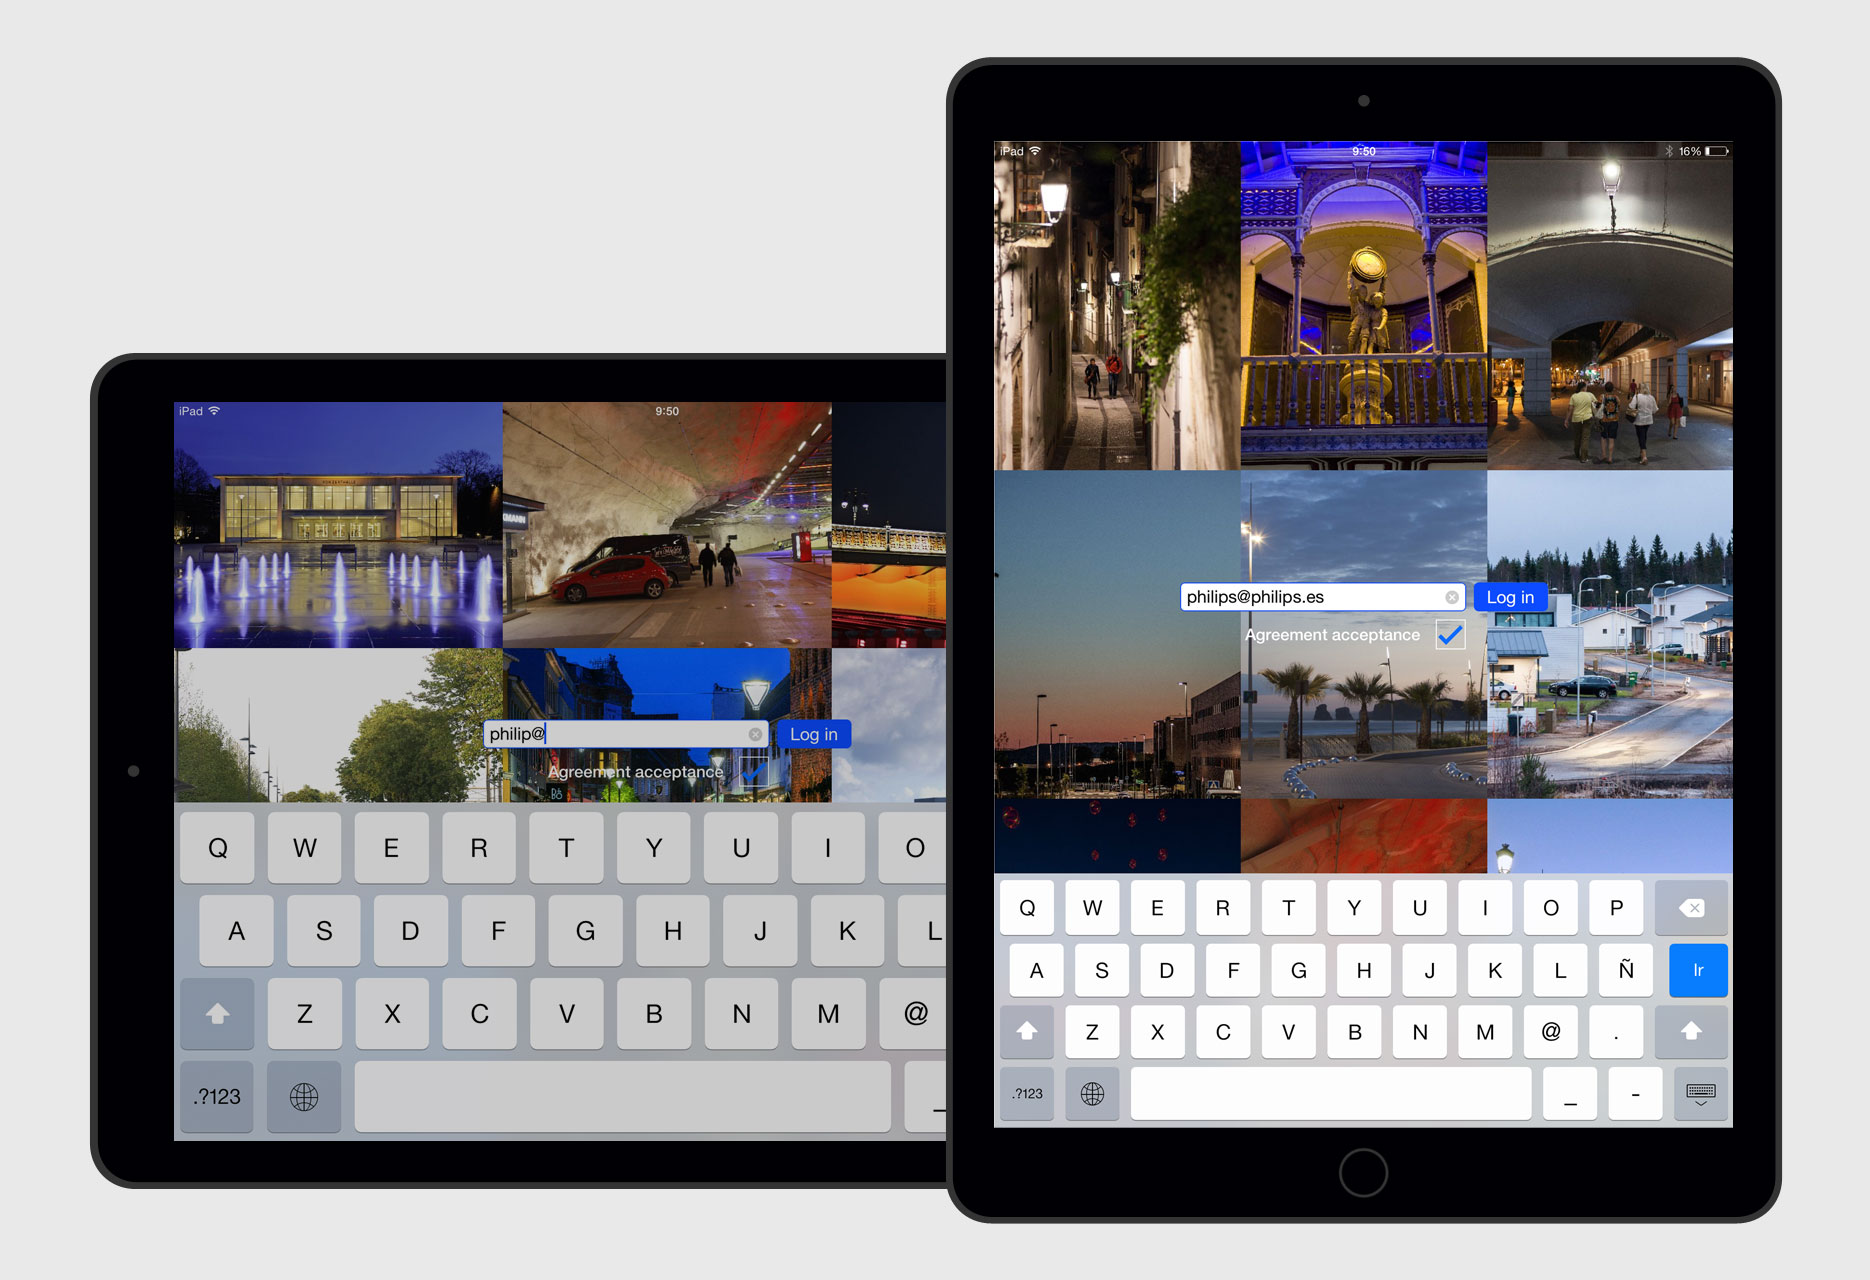 Aplicación iPad Banco de Imágenes Philips - app móvil / desarrollo iOS - 2015